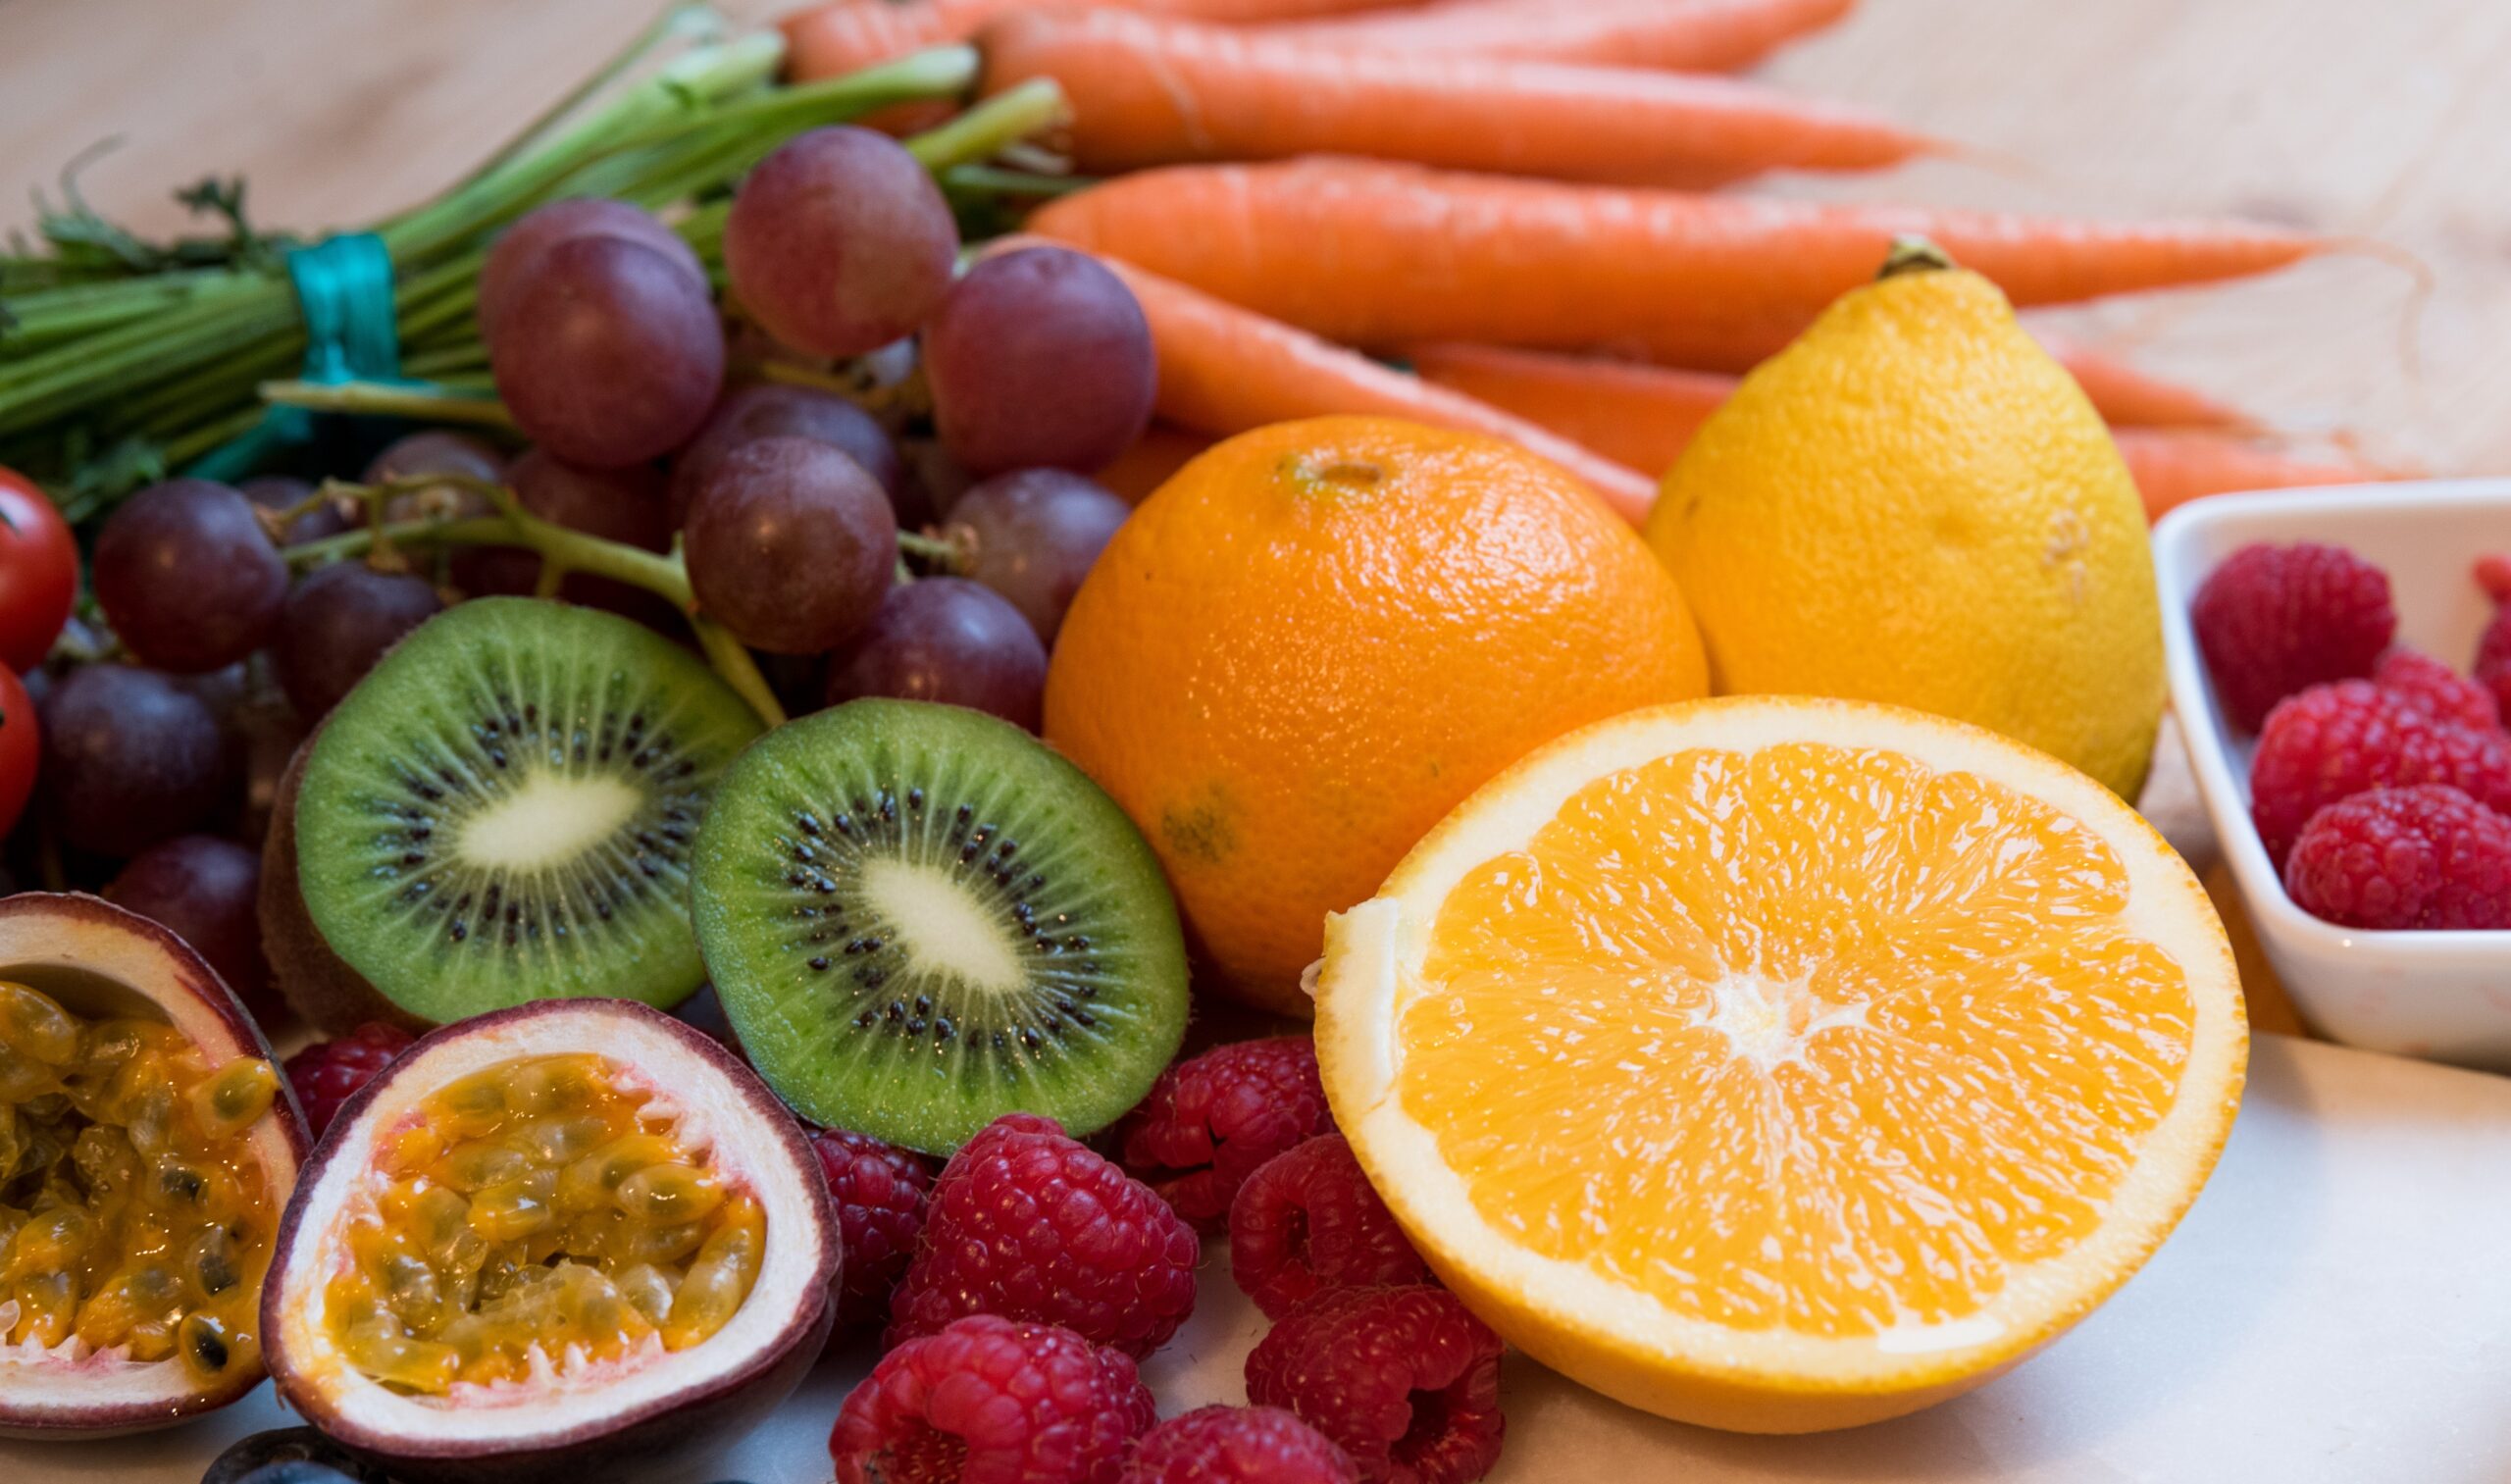 Et utvalg av frukt og grønnsaker på et bord.